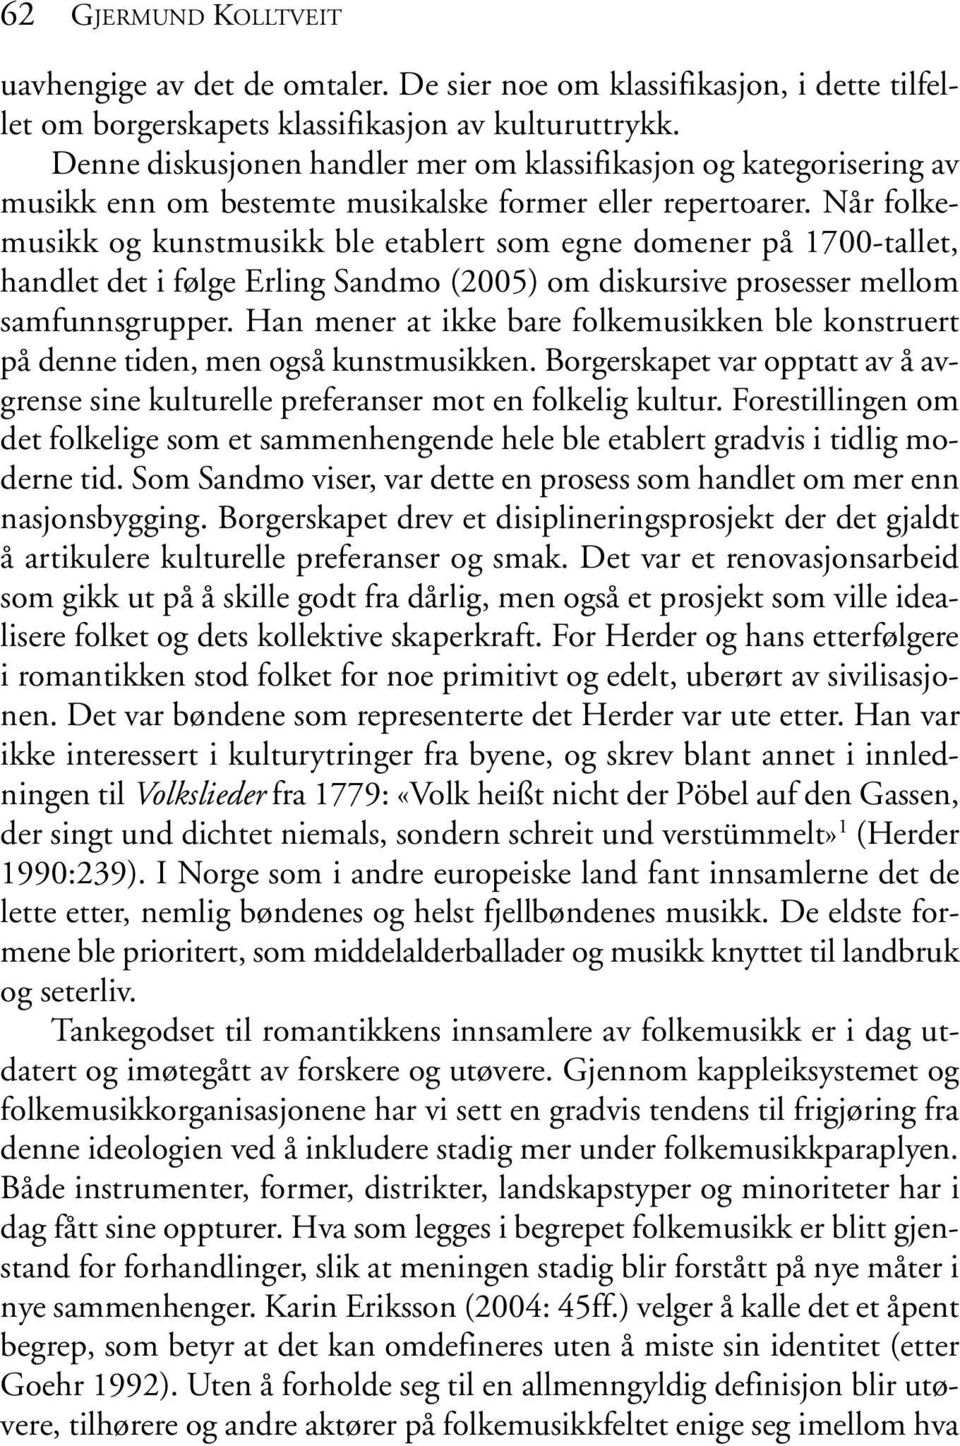 Når folkemusikk og kunstmusikk ble etablert som egne domener på 1700-tallet, handlet det i følge Erling Sandmo (2005) om diskursive prosesser mellom samfunnsgrupper.